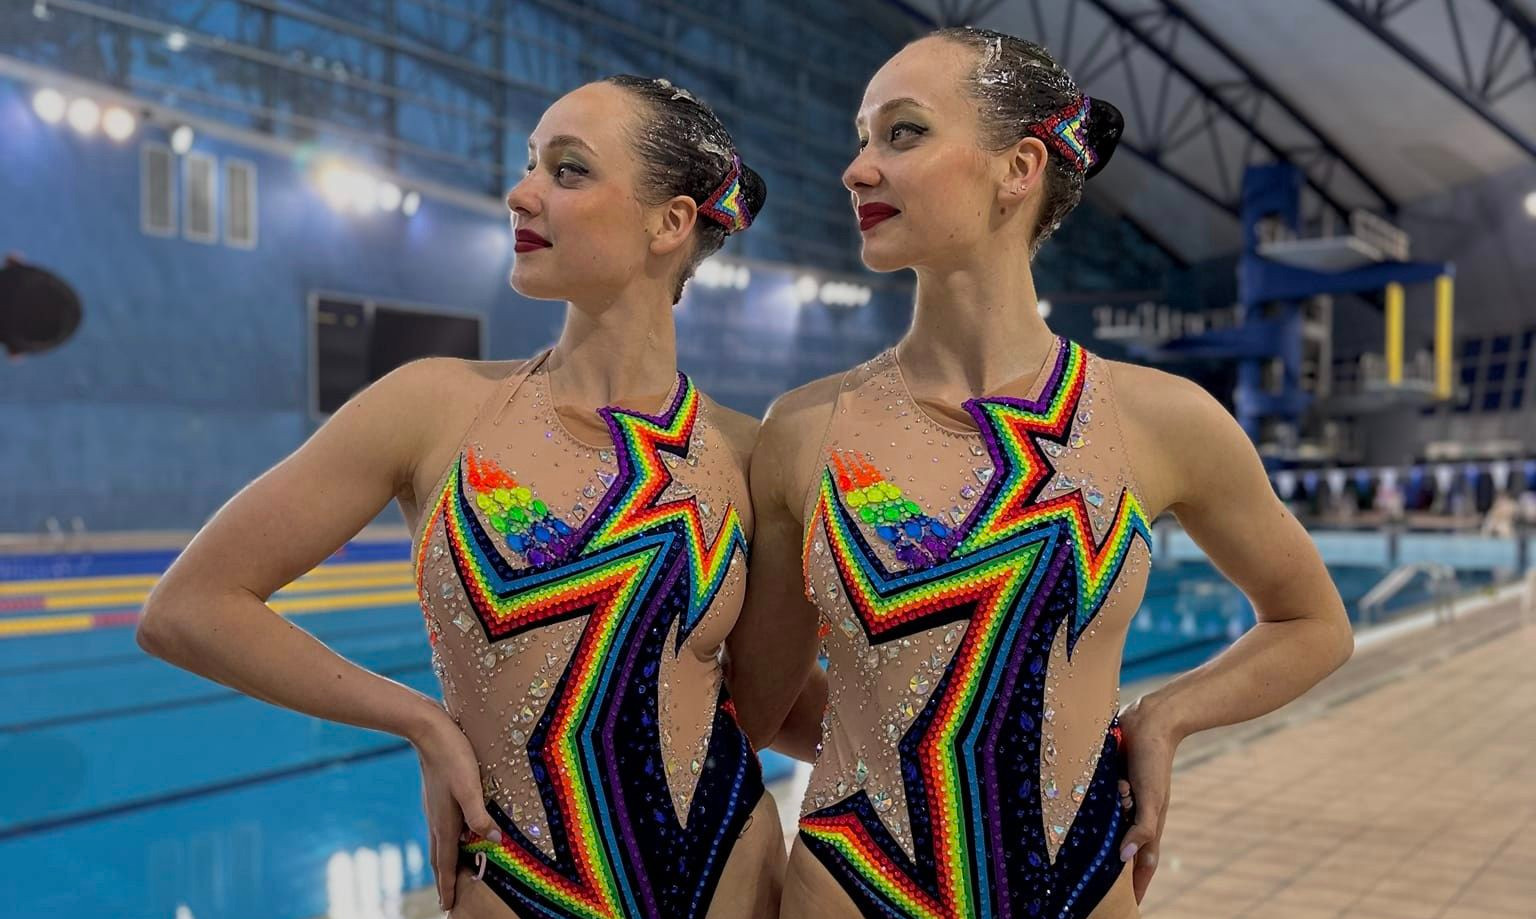 Сестры Алексеєвы завоевали бронзу на Кубке мира по артистическому плаванию